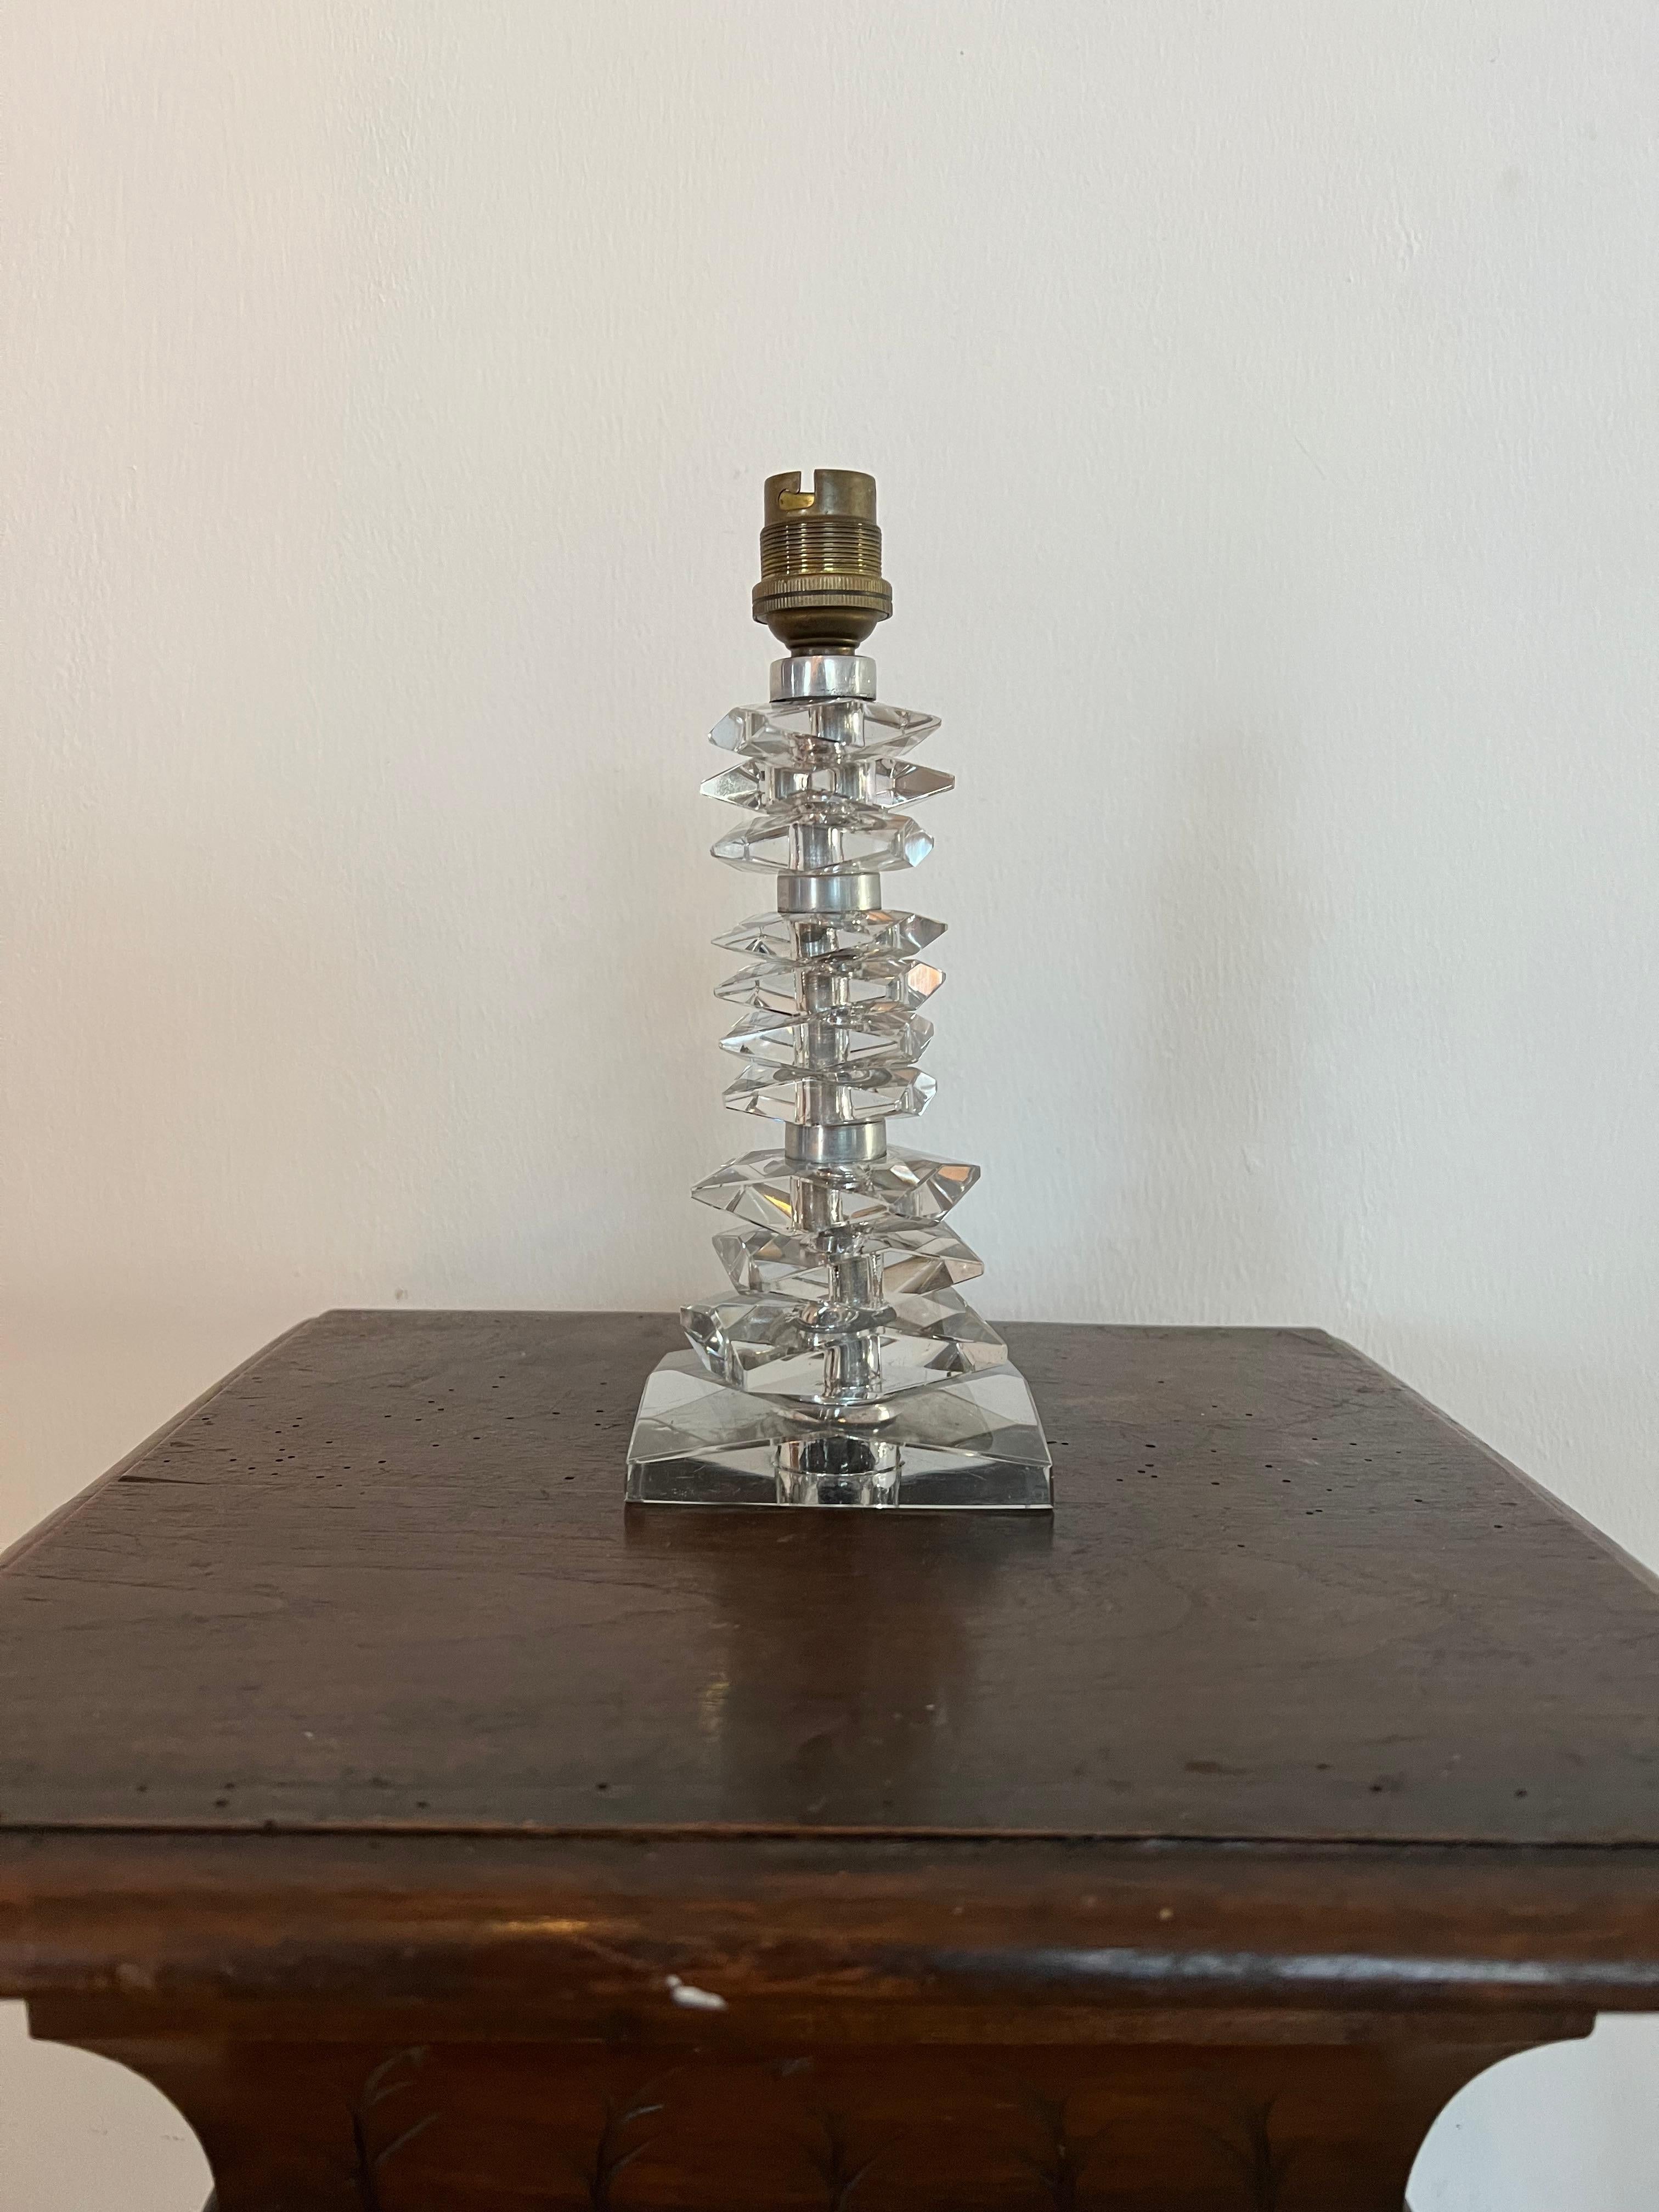 Belle lampe de table Art Déco dans le style de Baccarat et Jacques Adnet, non marquée.
Fabriqué en verre au plomb, coupé à la main.
France vers 1940.
Les pièces 